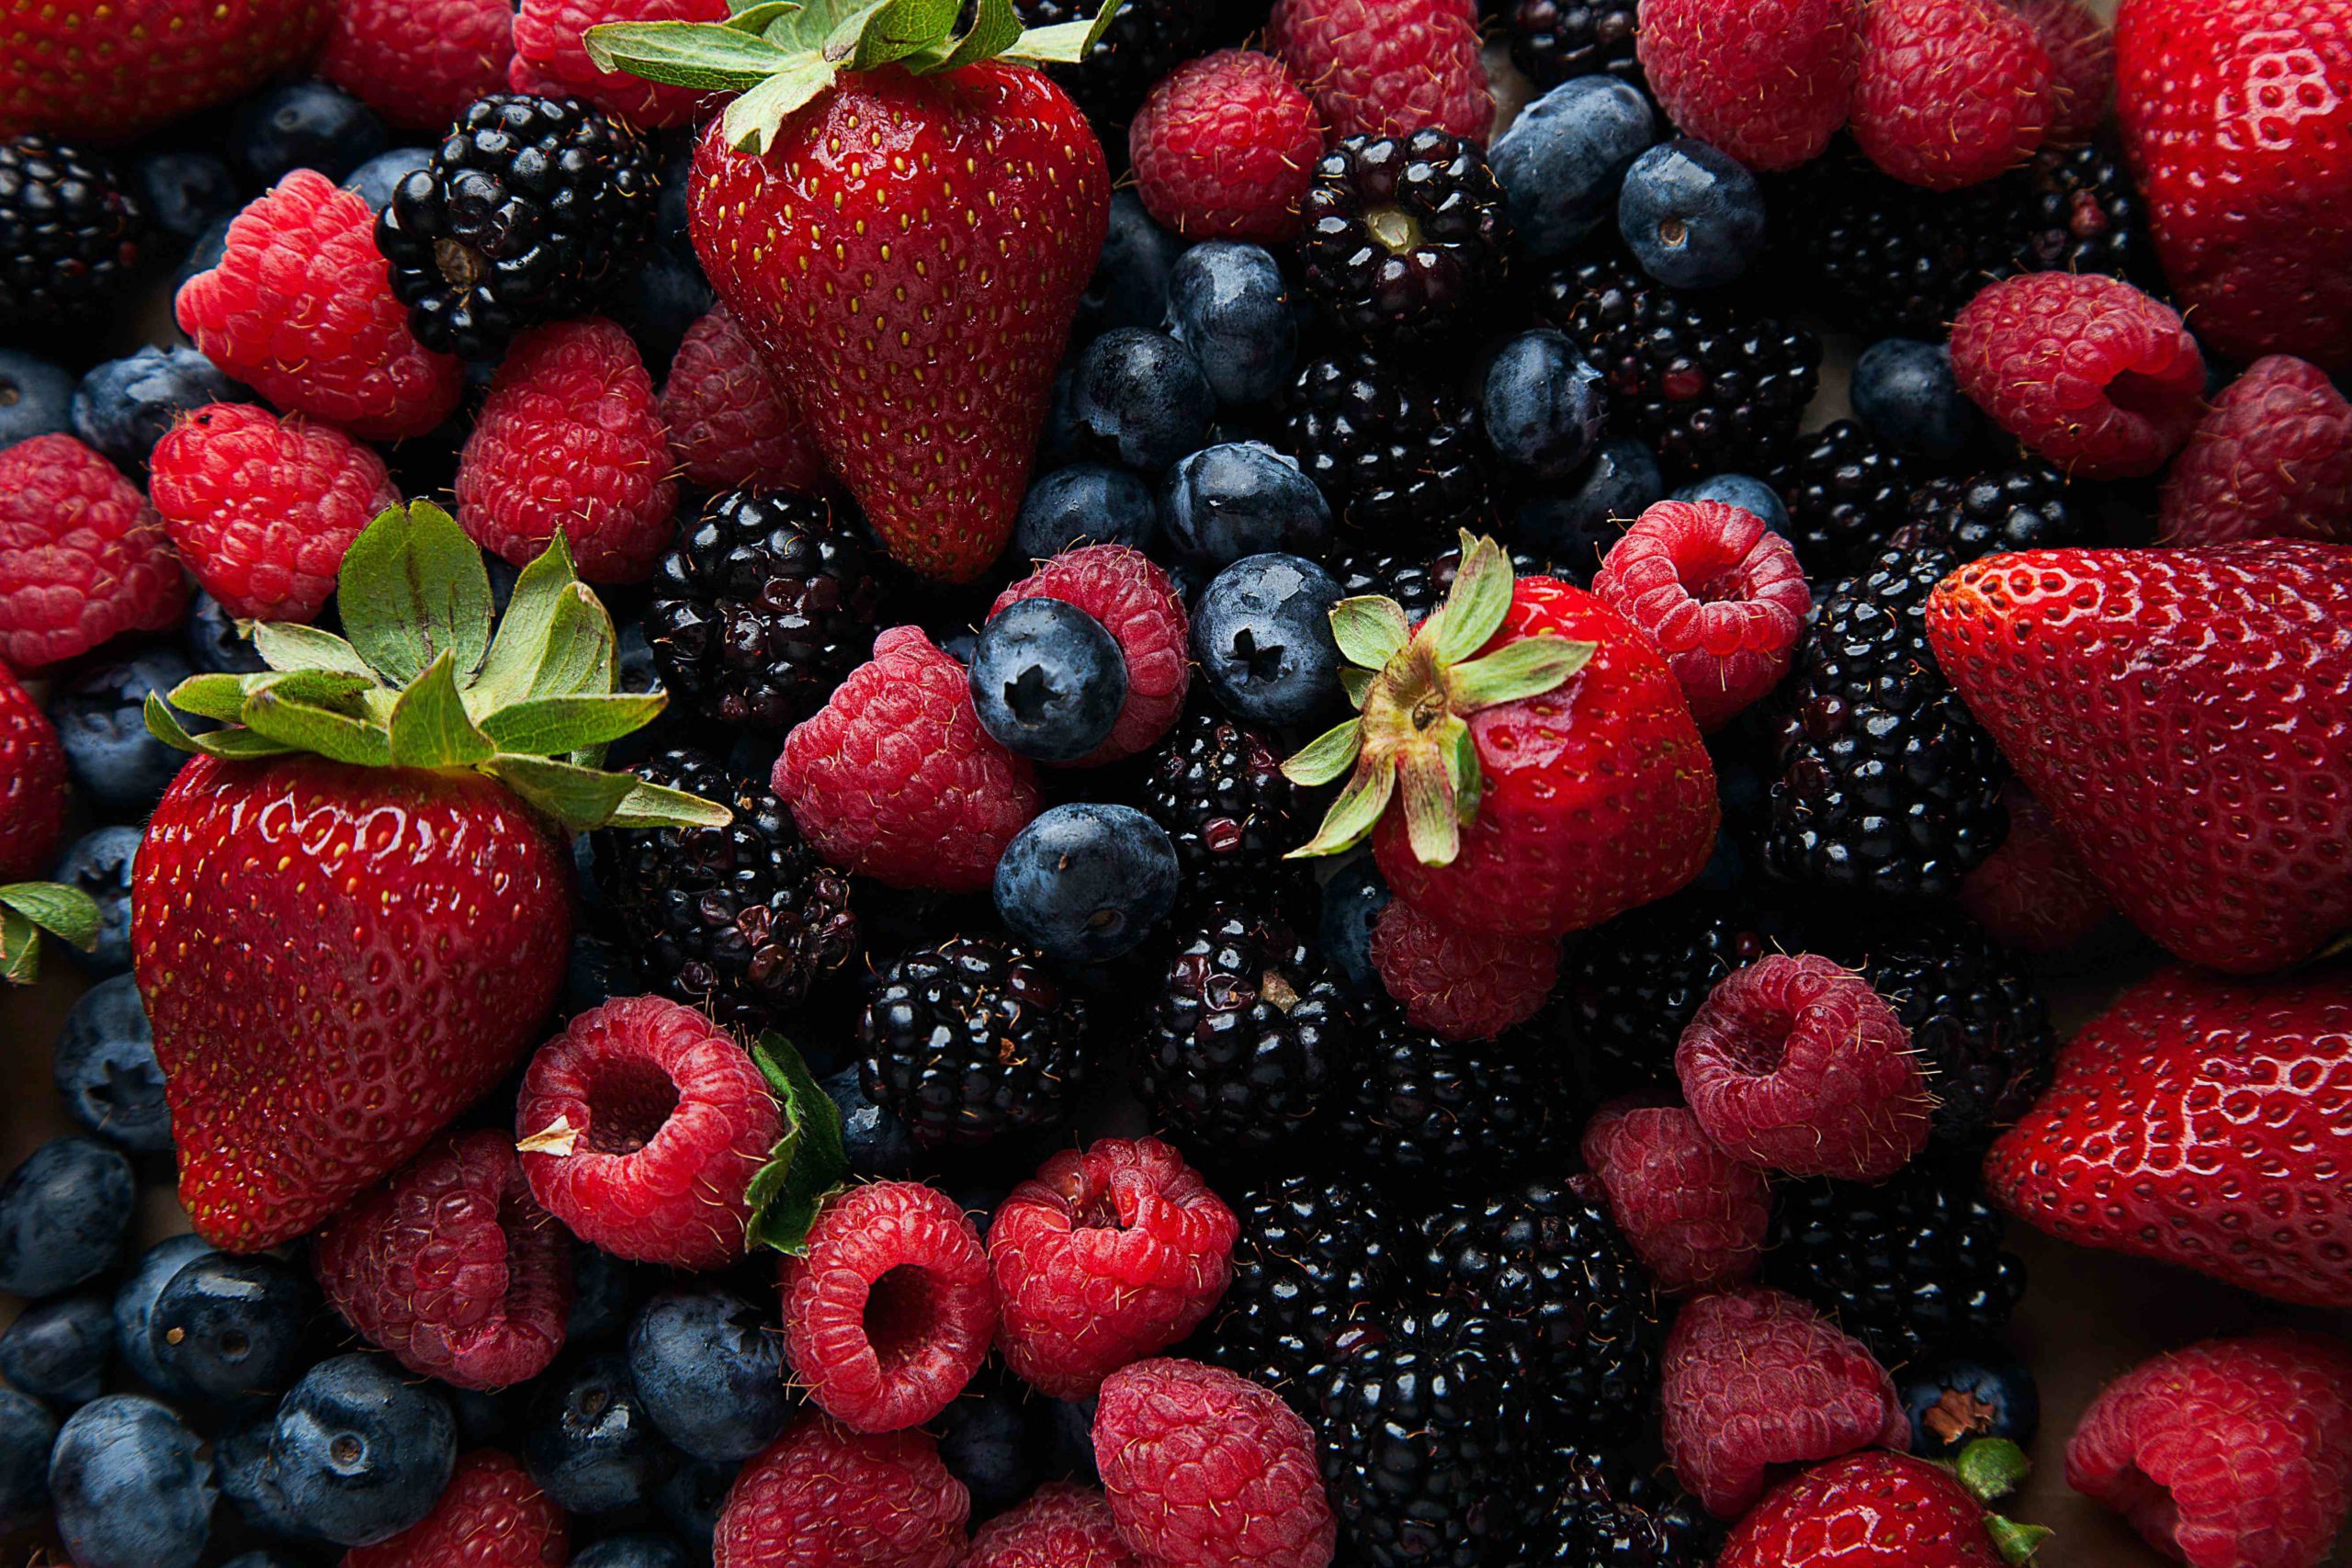 Nutritional Fruit - Strawberries, Blueberries, and Blackberries